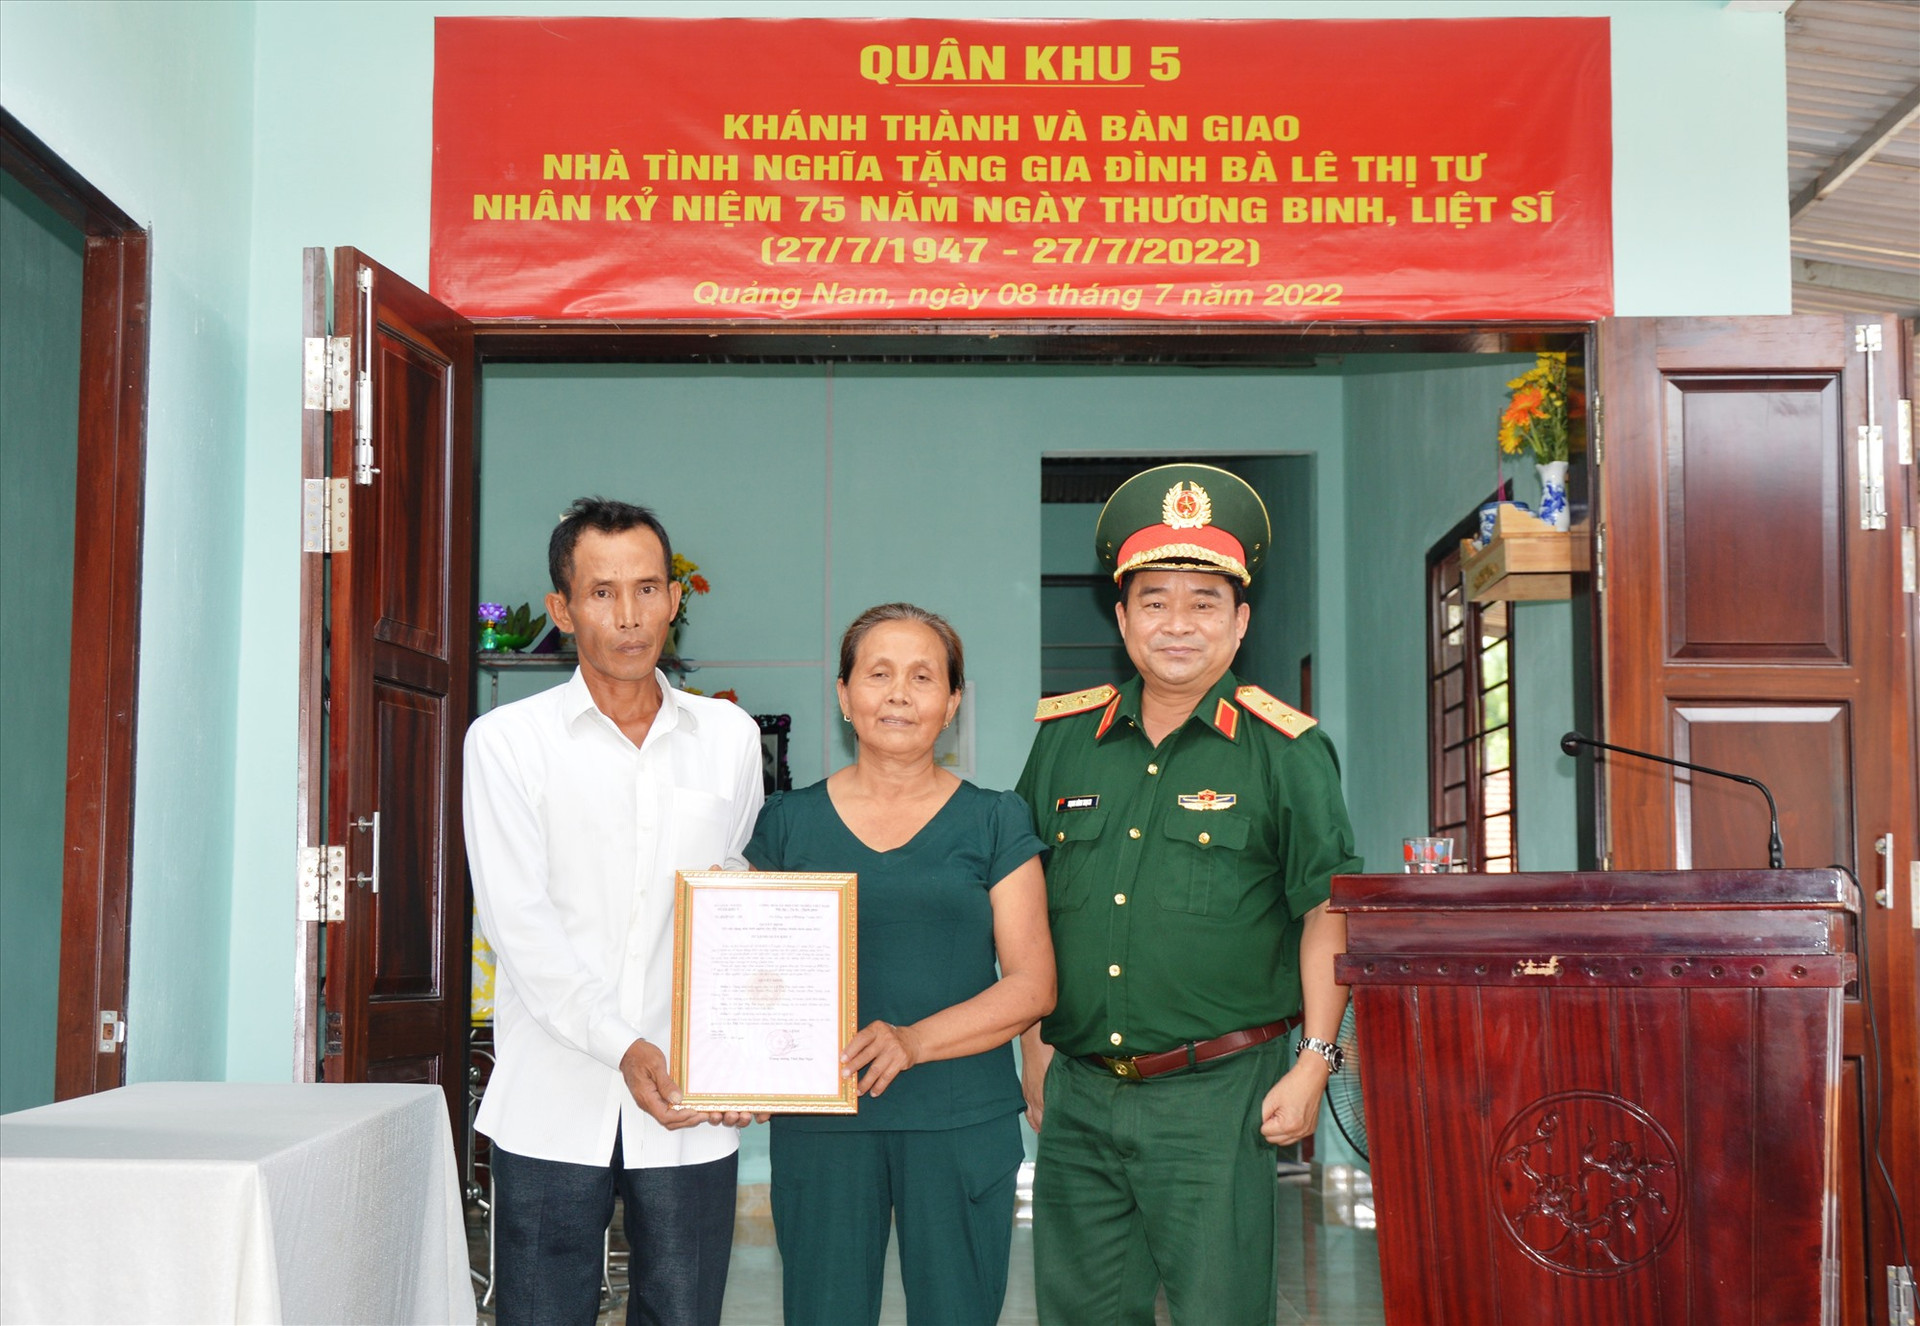 Trung tướng Trịnh Đình Thạch, Chính ủy Quân khu 5 trao quyết định bàn giao nhà cho gia đình bà Lê Thi Tư hiện sống tại xã Tam Thái, huyện Phú Ninh.